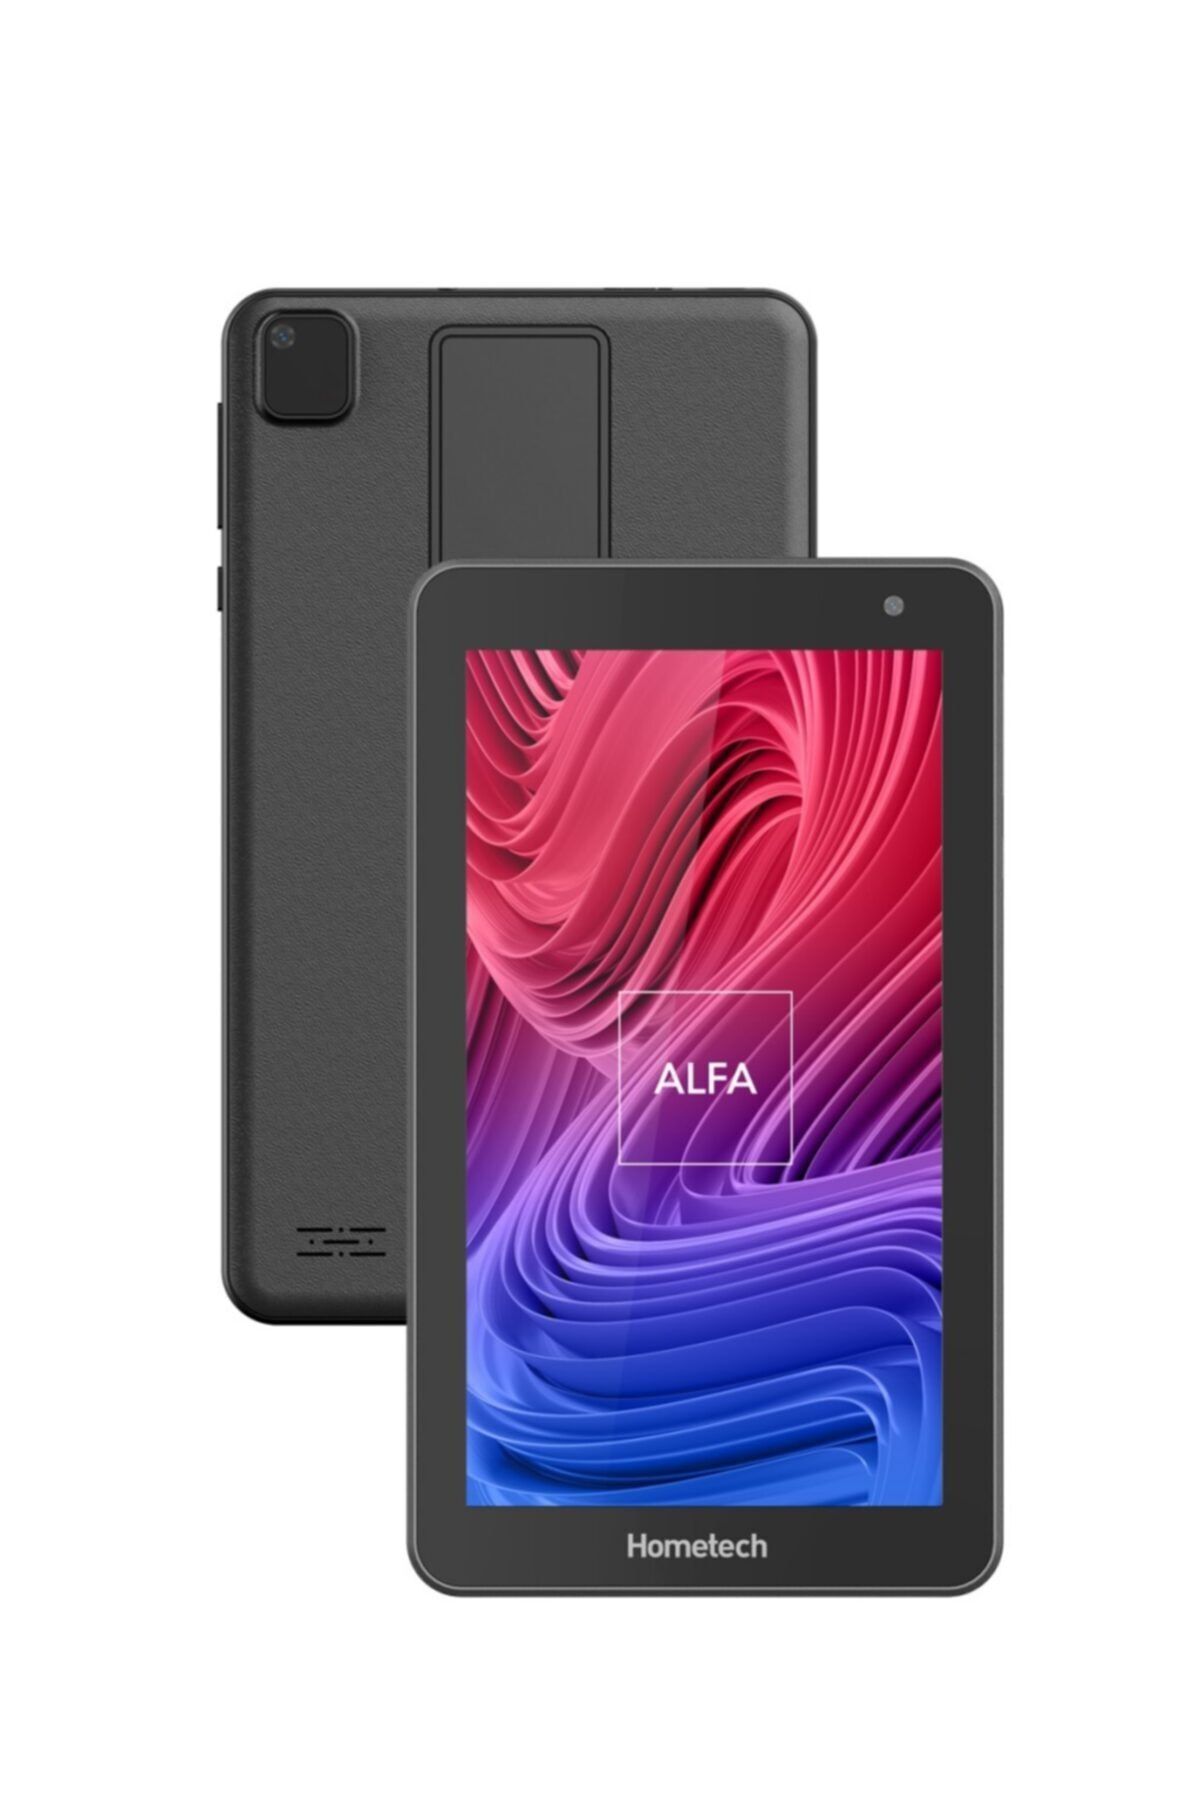 Hometech Alfa 7mrc 2 Gb 32 Gb 7" Tablet Siyah